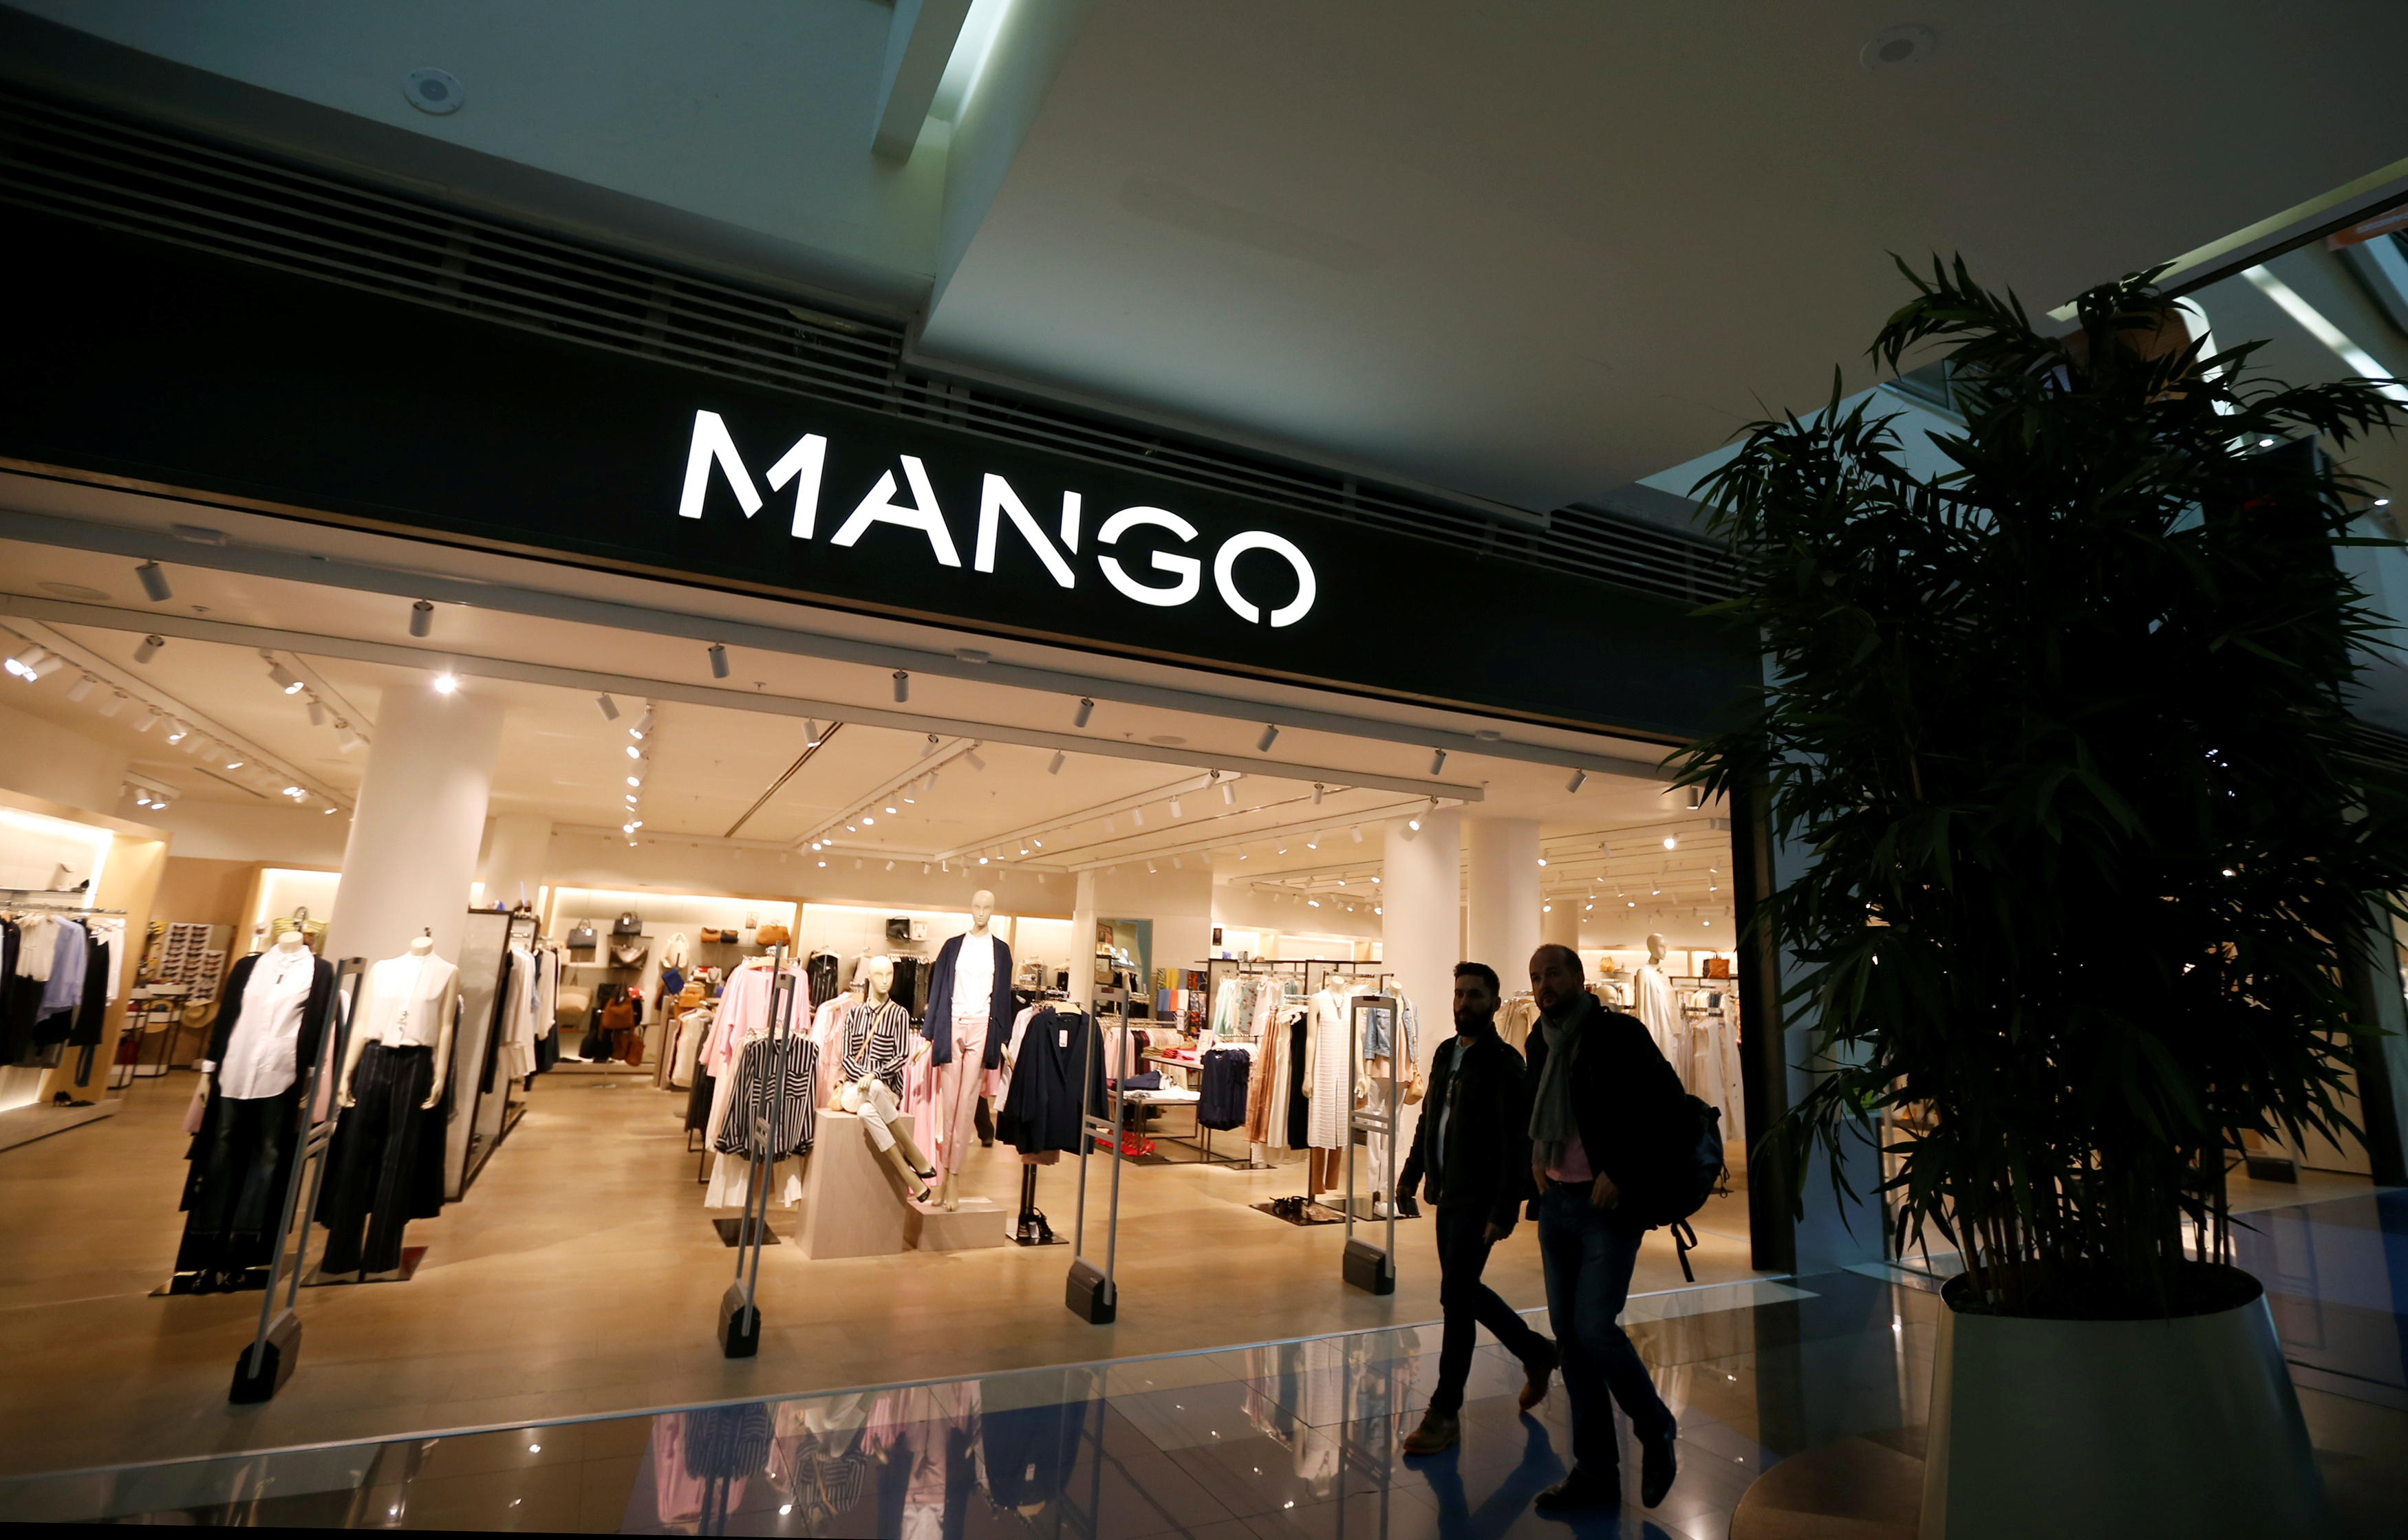 11 ofertas de Mango Outlet por menos de 11 euros con los que ahorrar. | Insider España